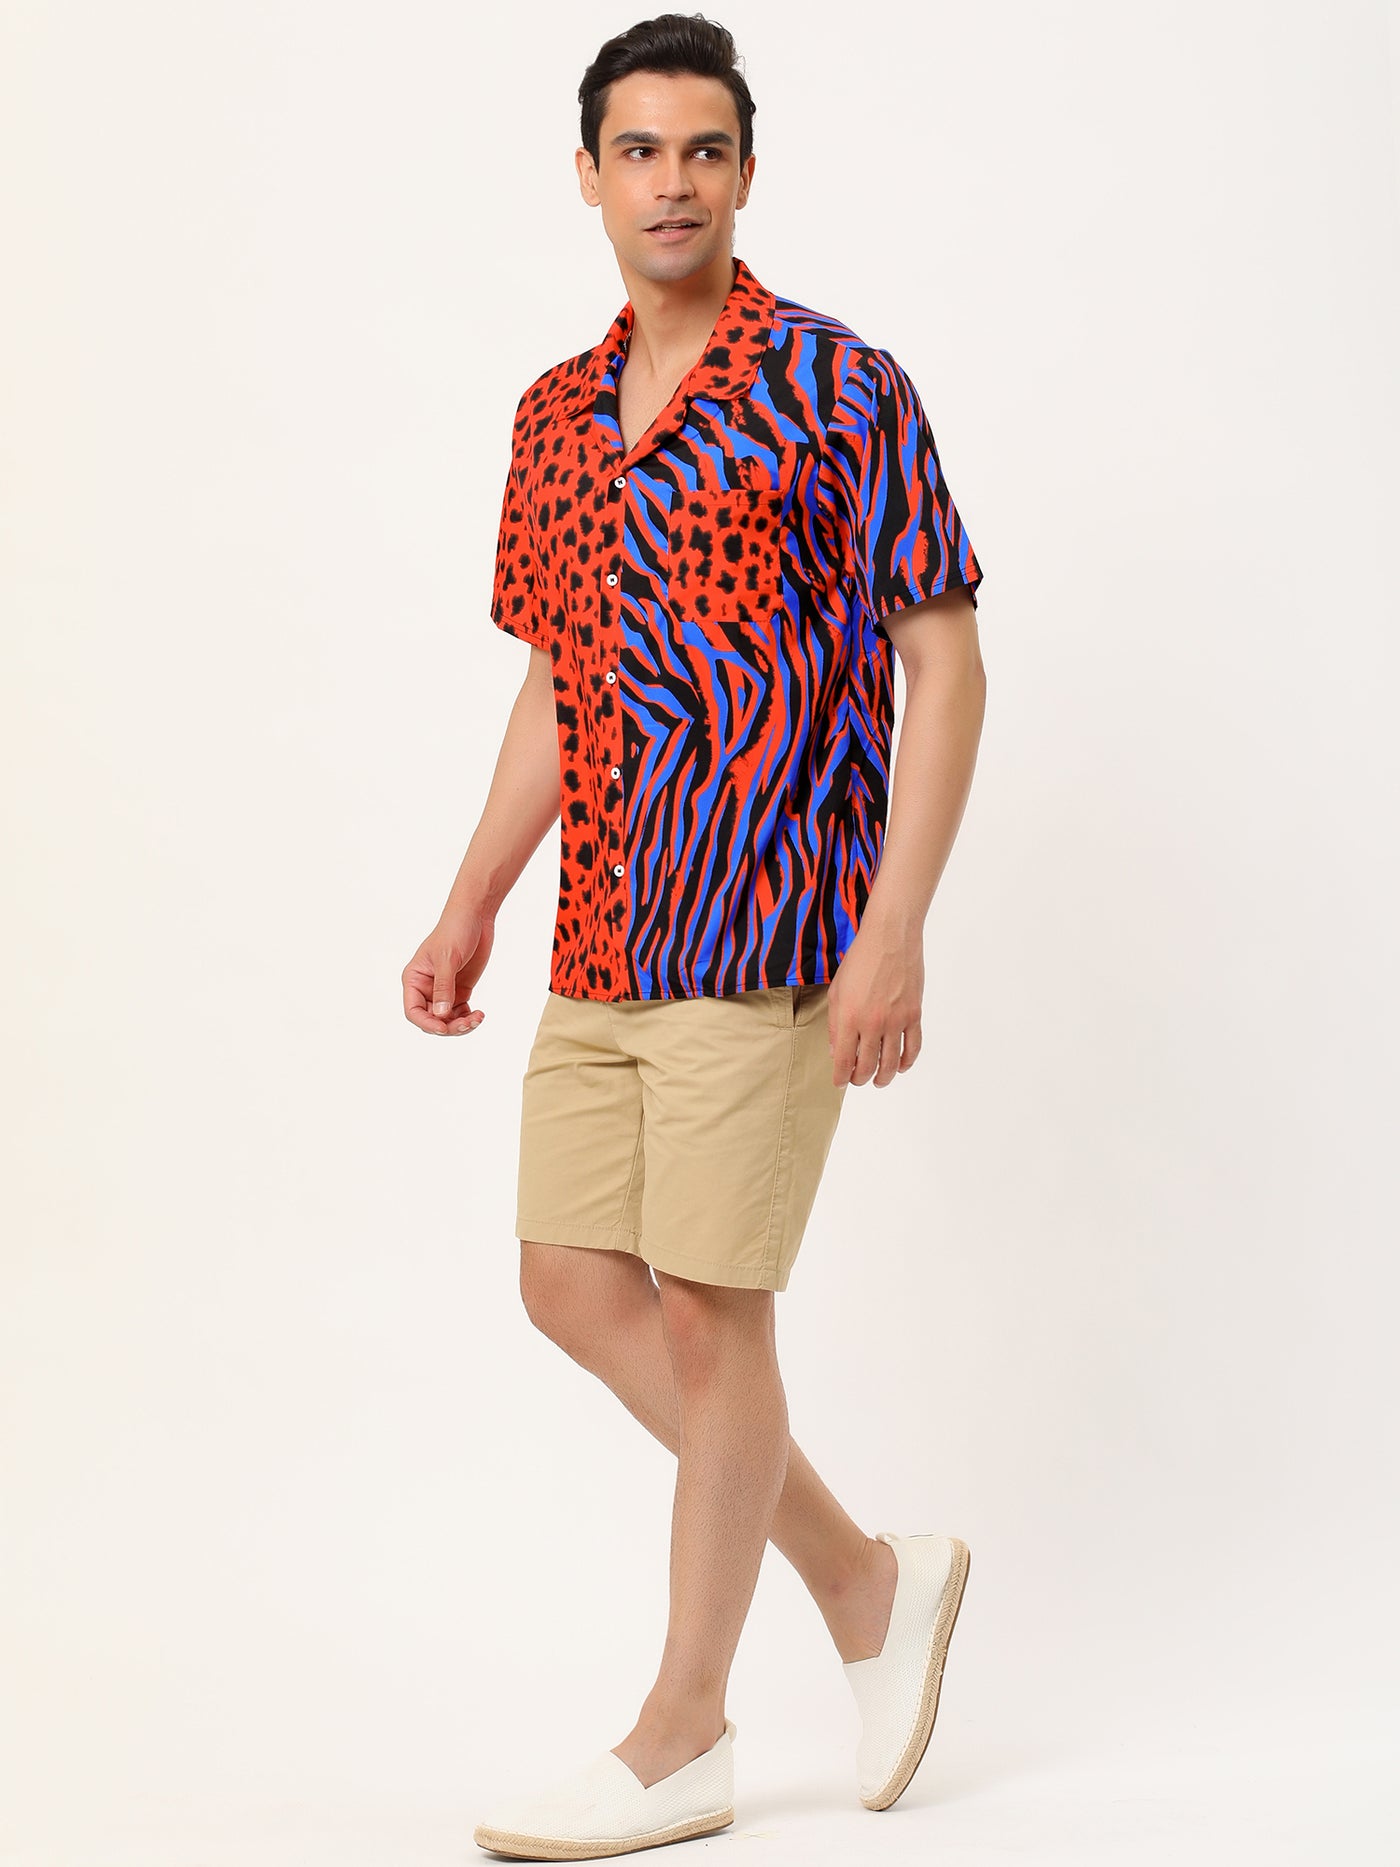 Bublédon Summer Leopard Print Short Sleeve Button Shirts